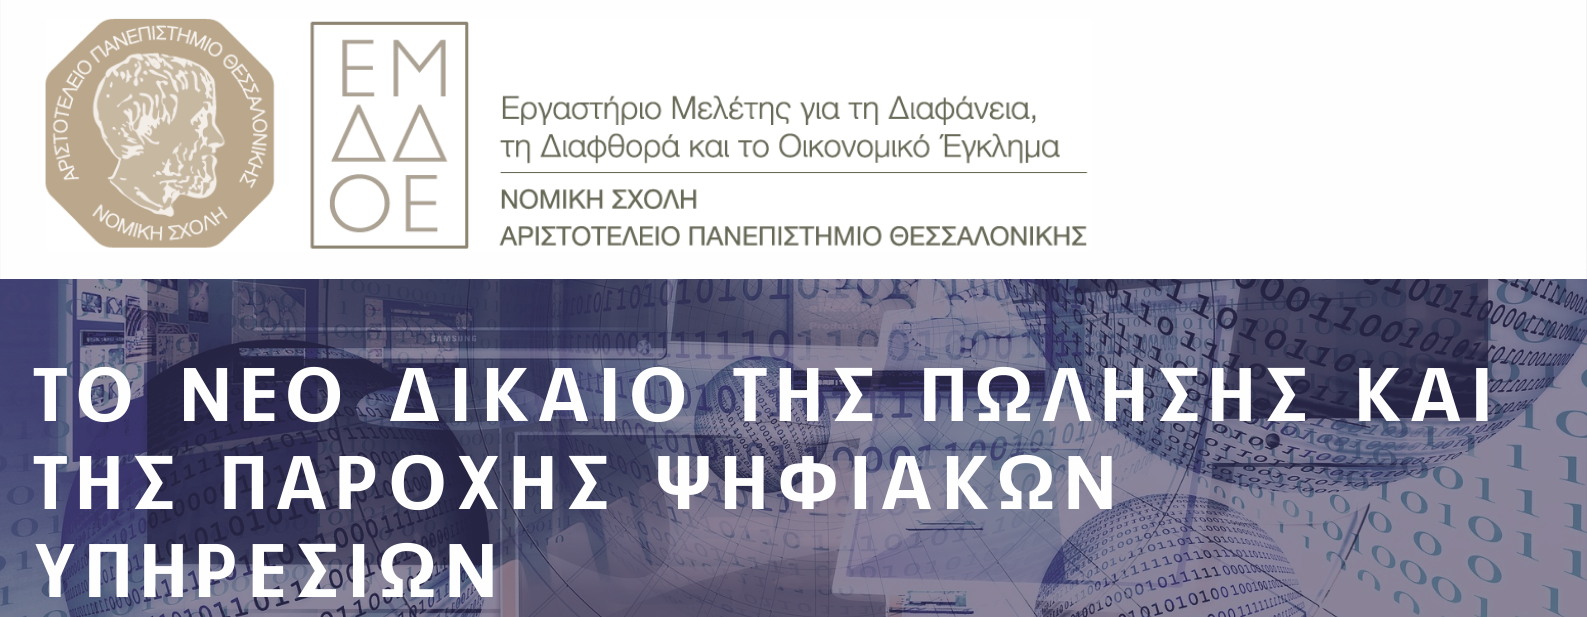 Διαδικτυακή επιστημονική εκδήλωση: “Το νέο δίκαιο της πώλησης και της παροχής ψηφιακών υπηρεσιών”, 9.12.2022